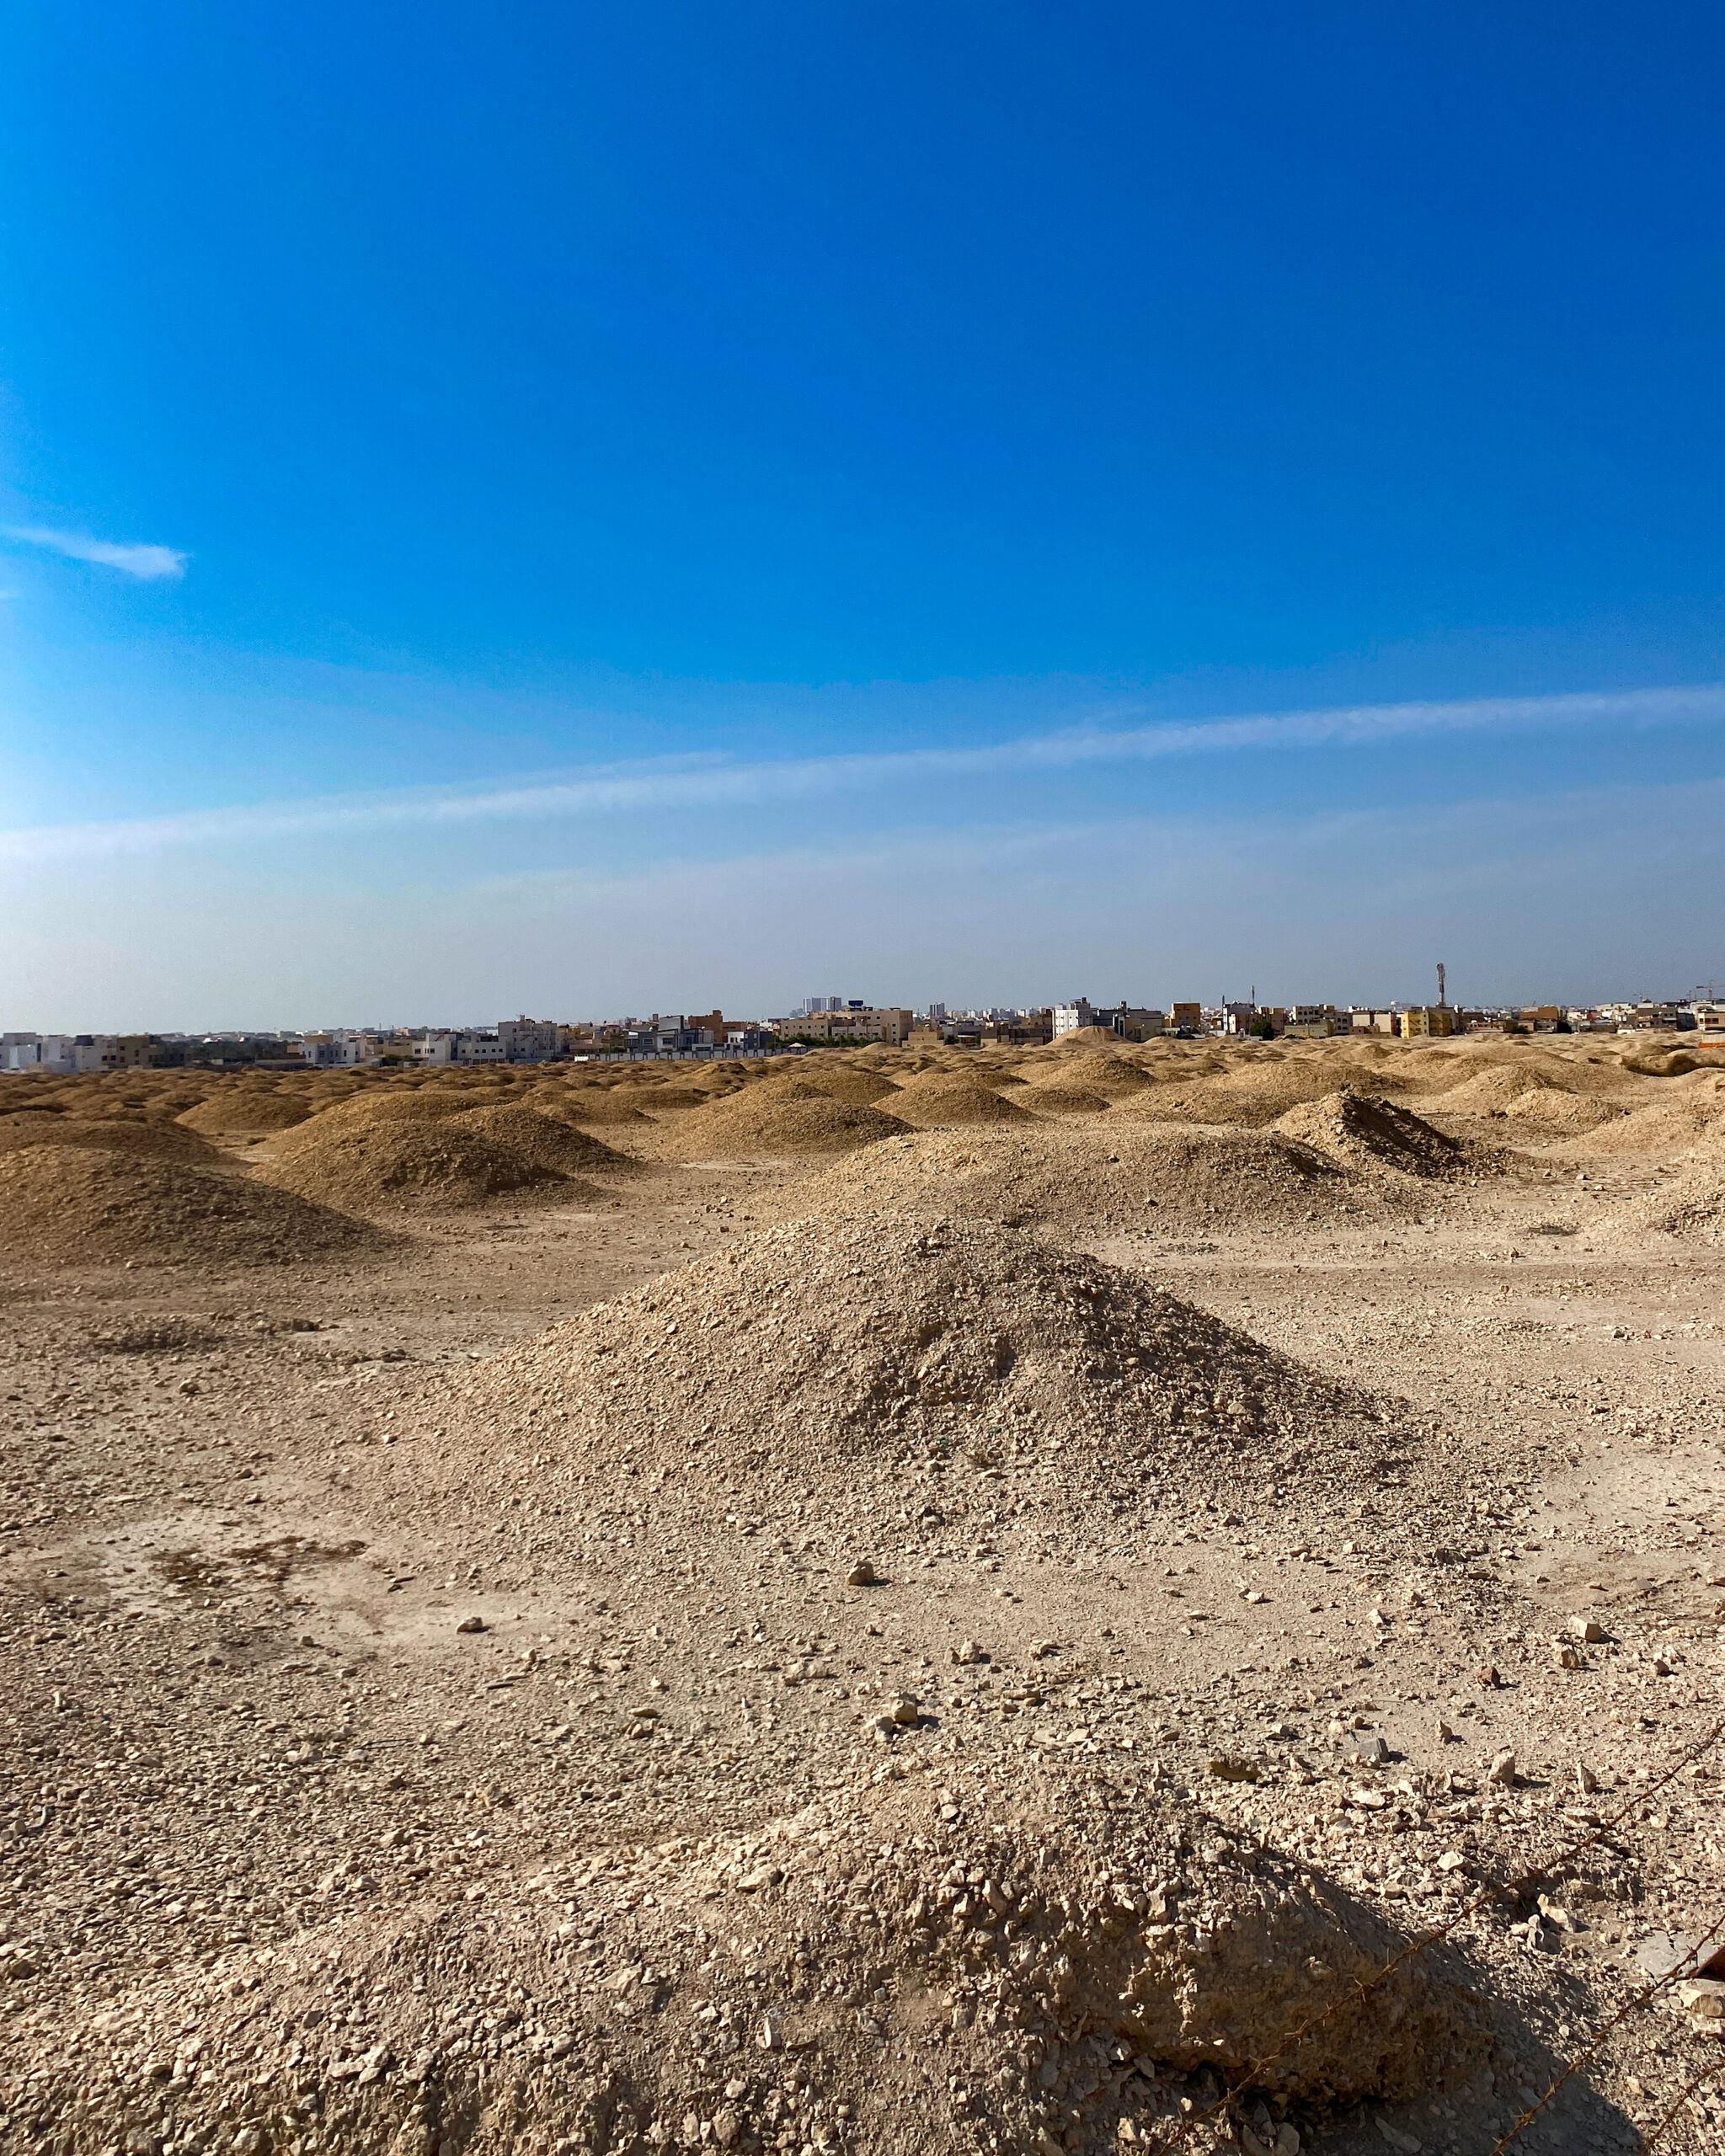 Dilmun Burial Mounds Bahrain Sarah Latham